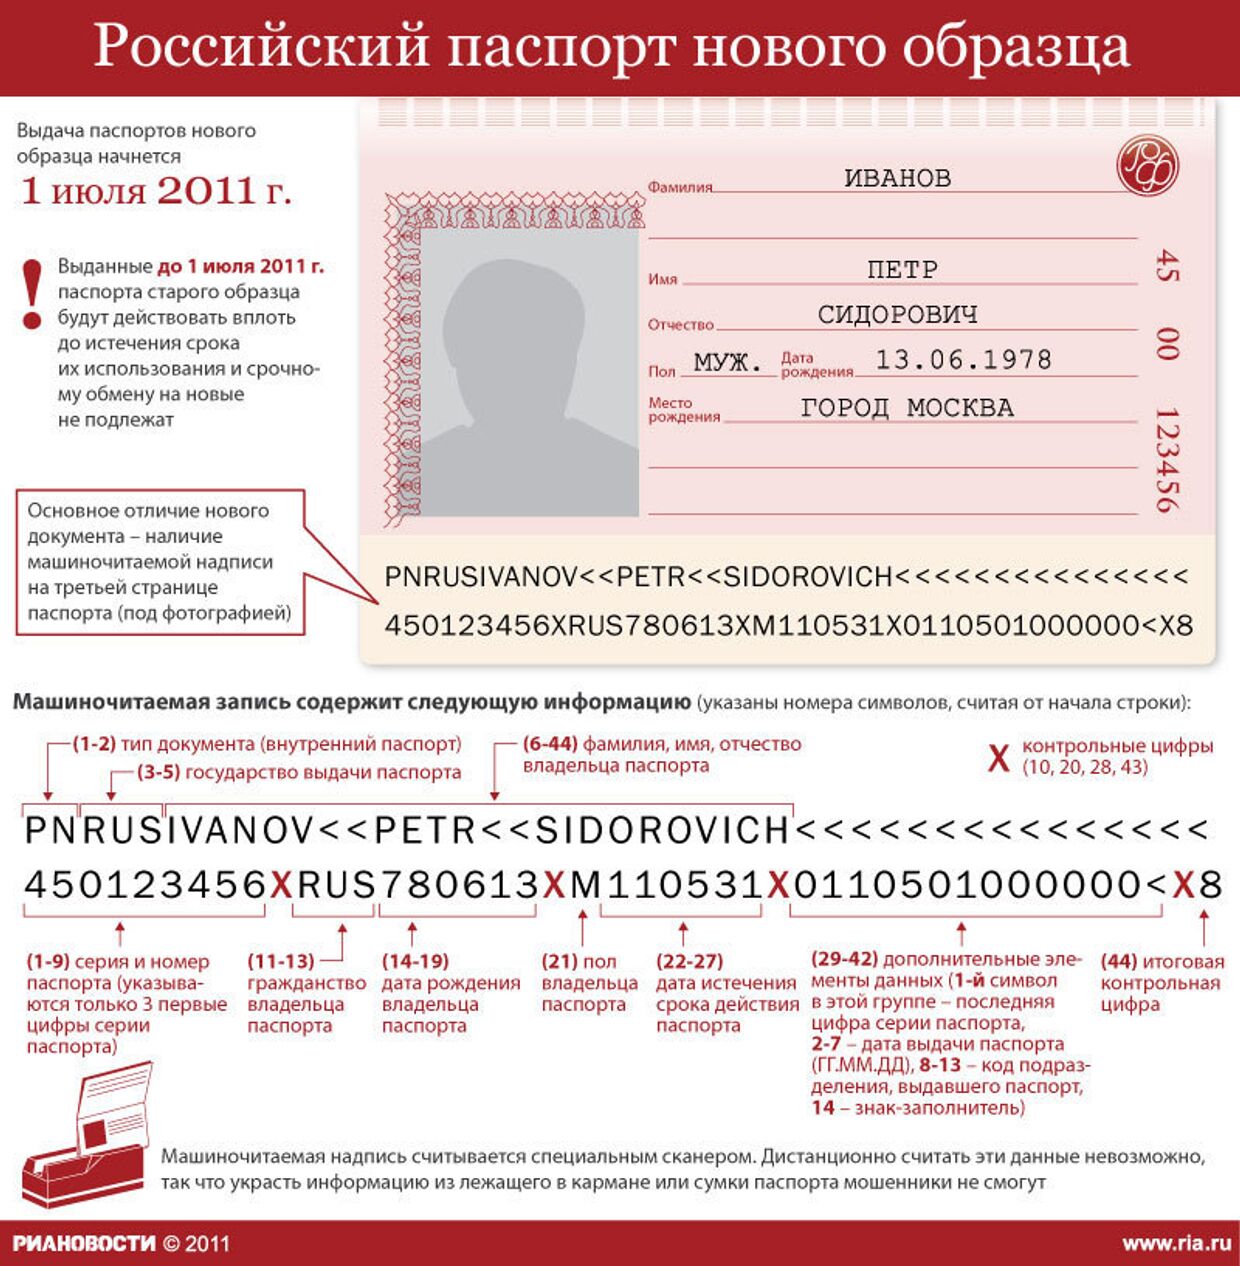 Российский паспорт нового образца